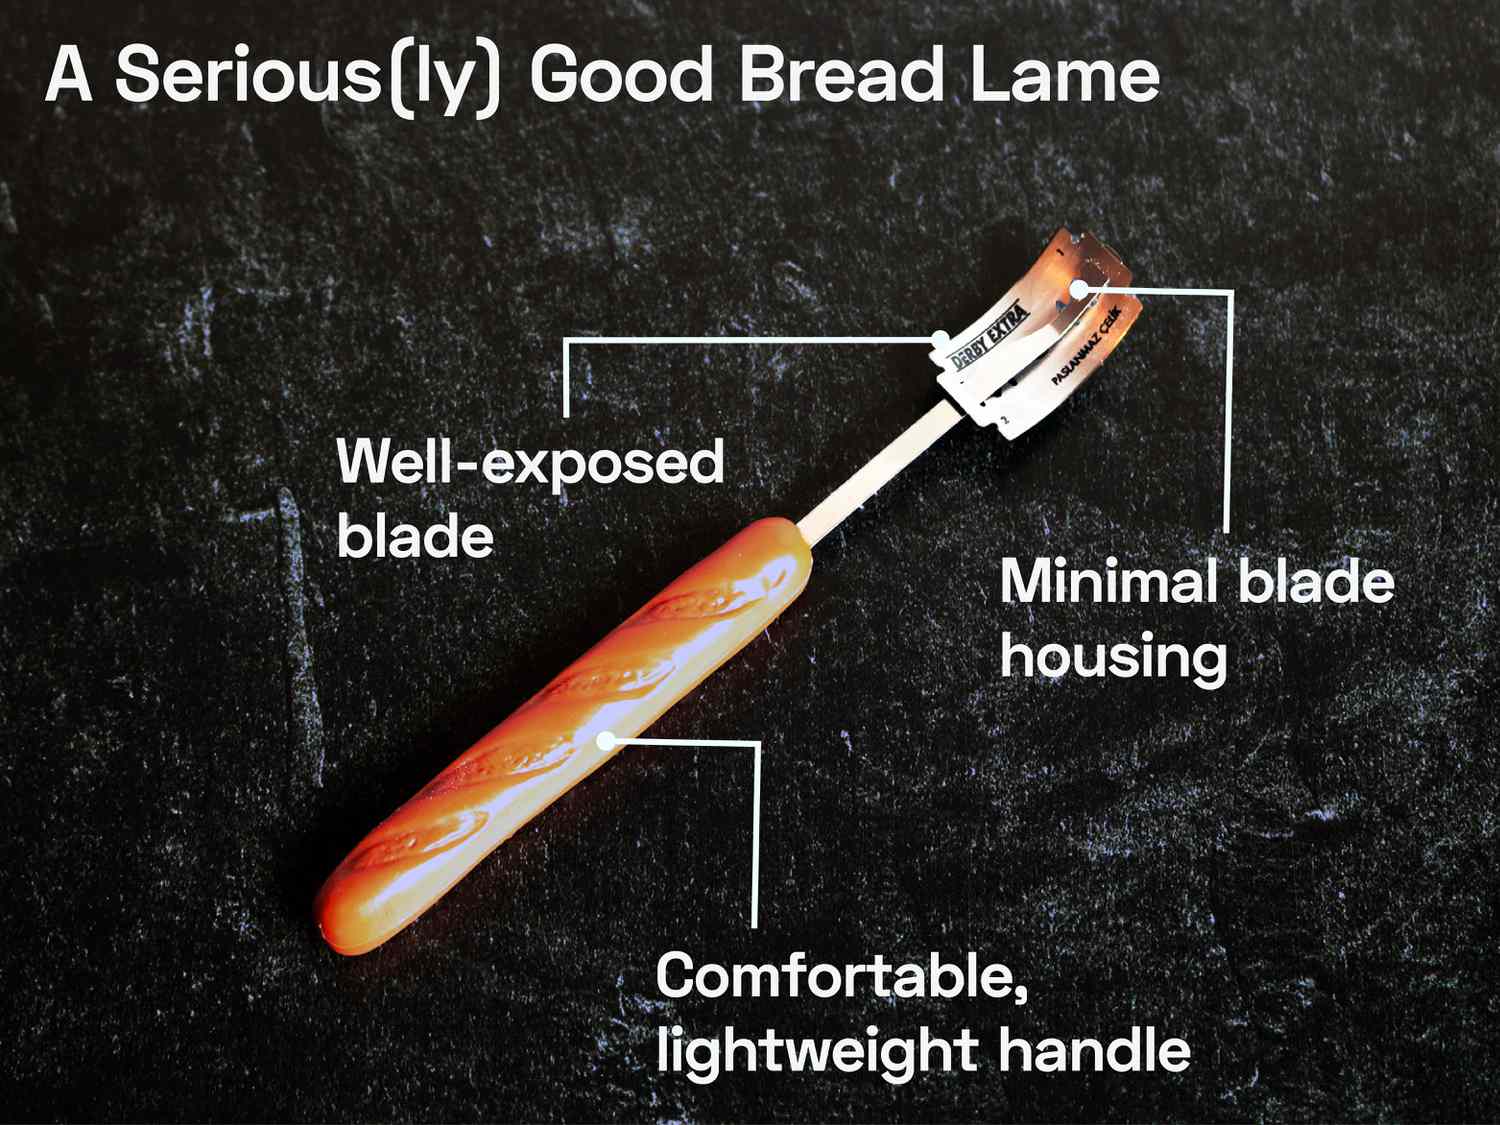 长棍状的塑料柄，连接在一根薄薄的金属条上，用来切面包面。